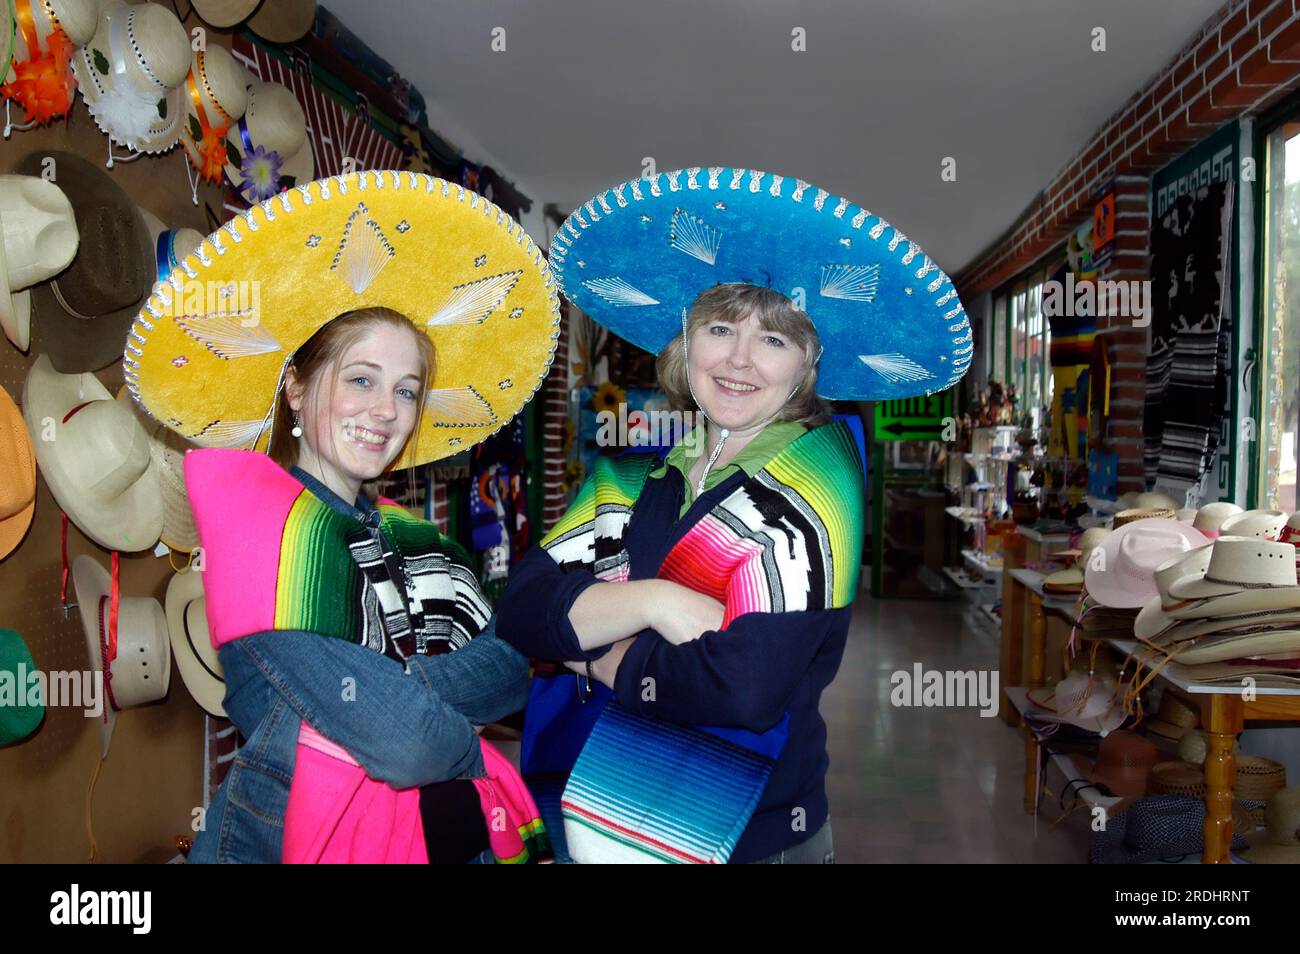 Sombreros messicani modello madre e figlia e coperte colorate. La madre indossa un cappello blu brillante e la figlia indossa un giallo. Entrambi touris Foto Stock